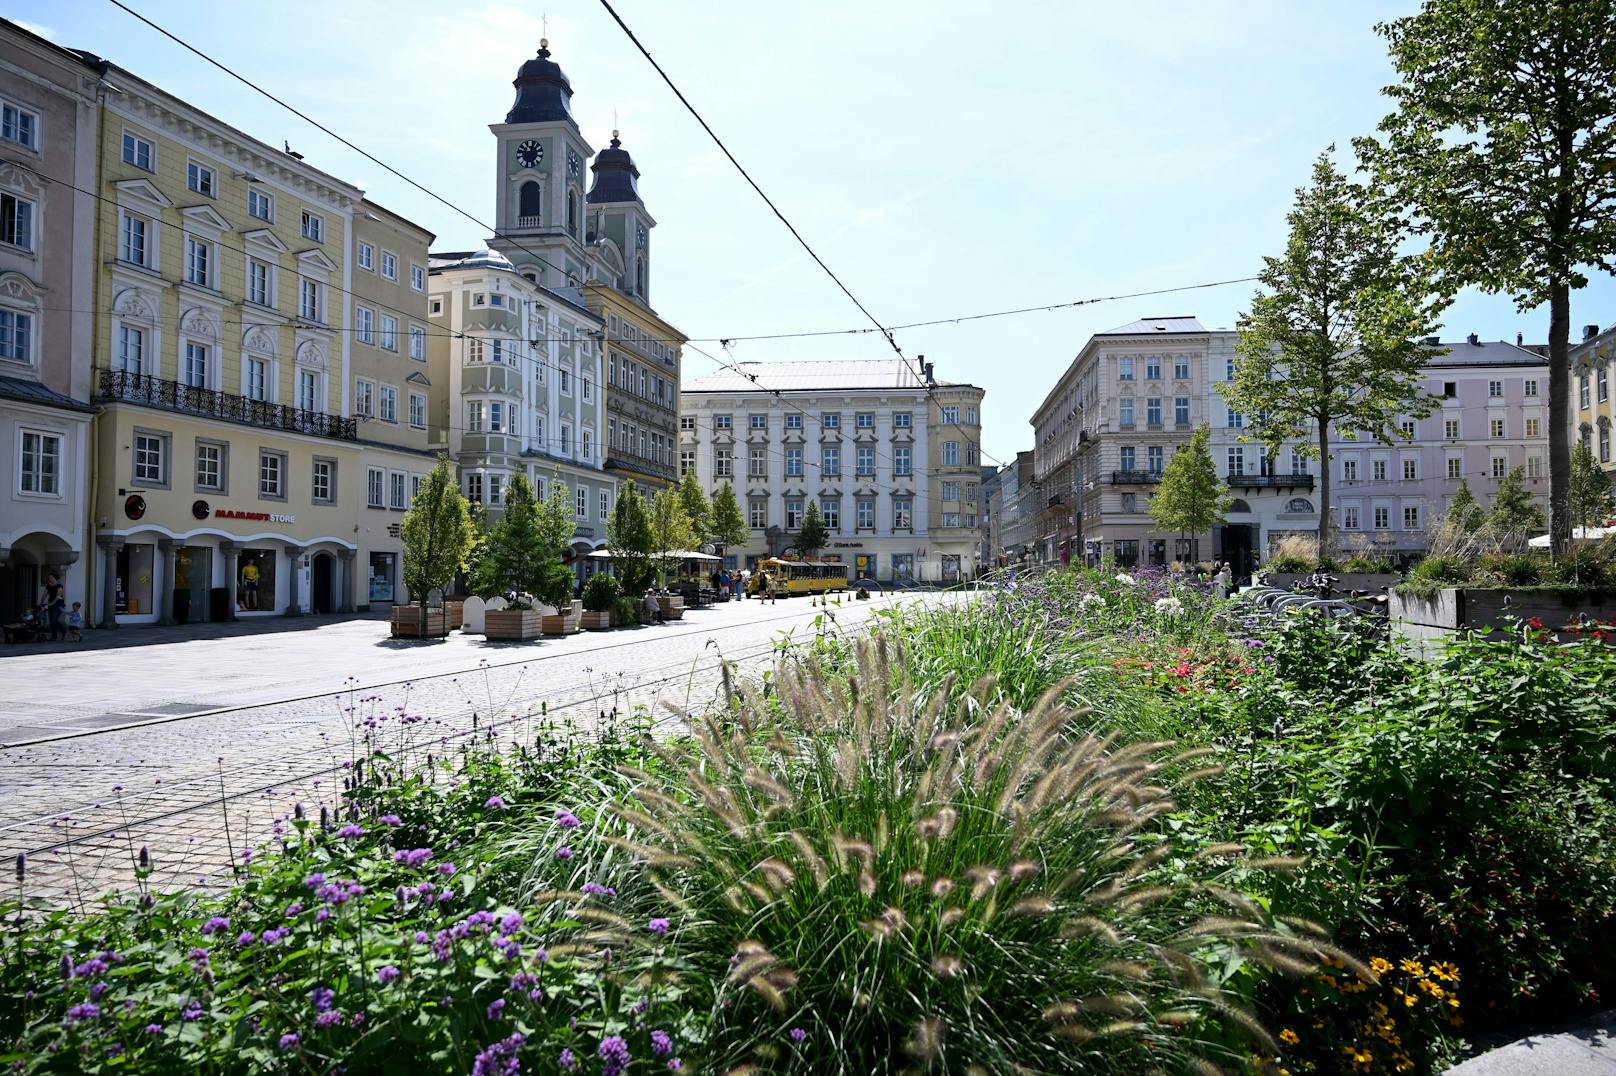 Linz ist mehr als eine Industriestadt. Die Stahlstadt hat sich über die Jahre zu einer innovativen Stadt gemausert.